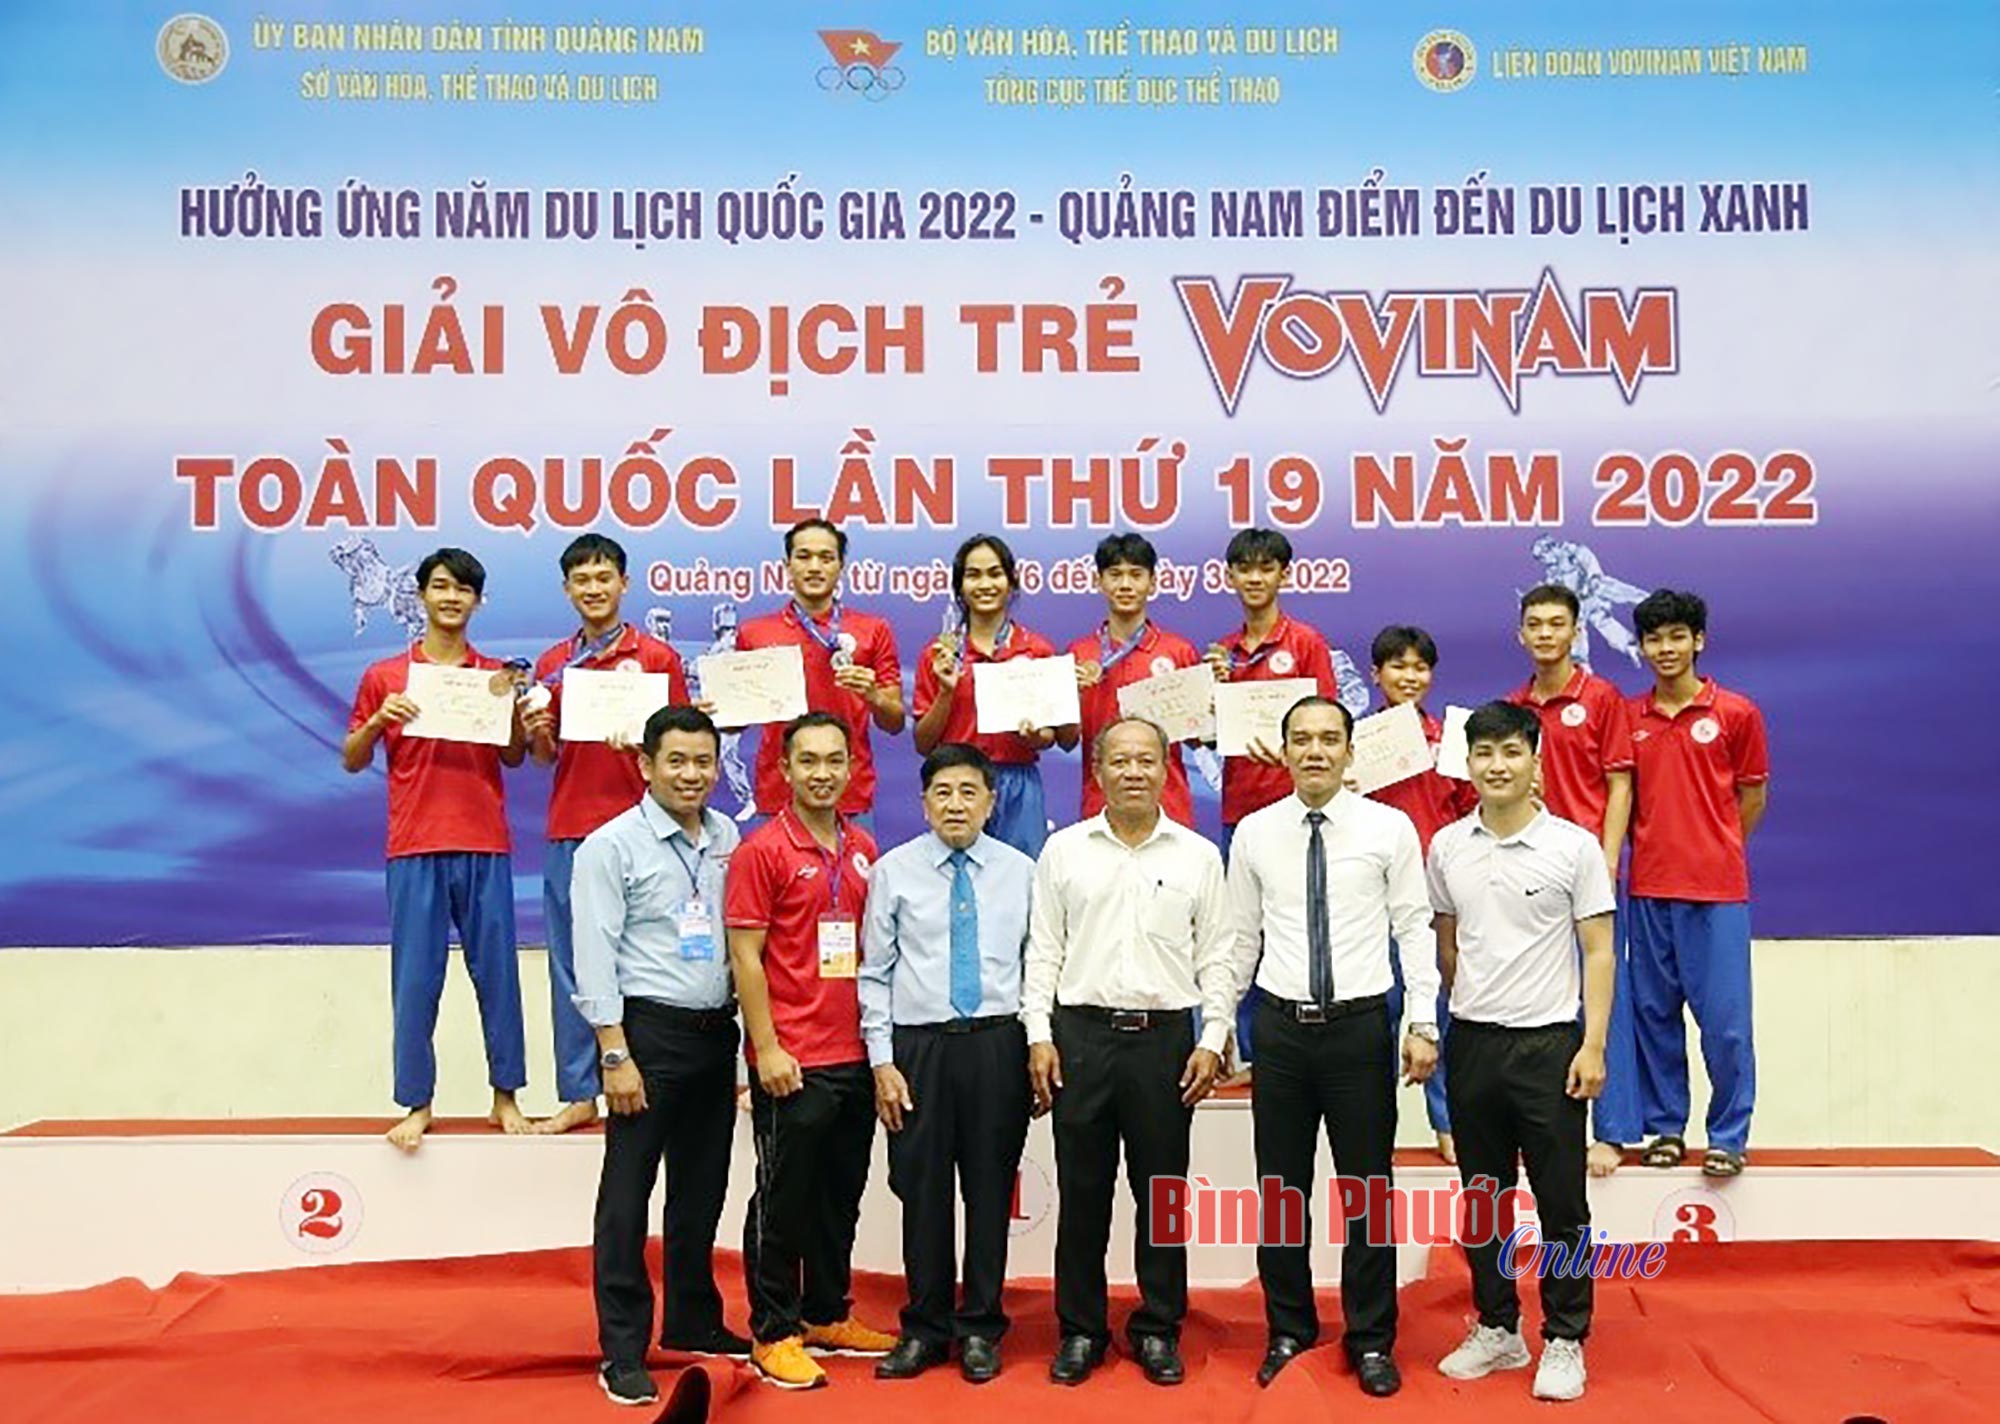 Vovinam môn võ Việt màu xanh cổ truyền trên đất Mỹ  Nguoi Viet Online